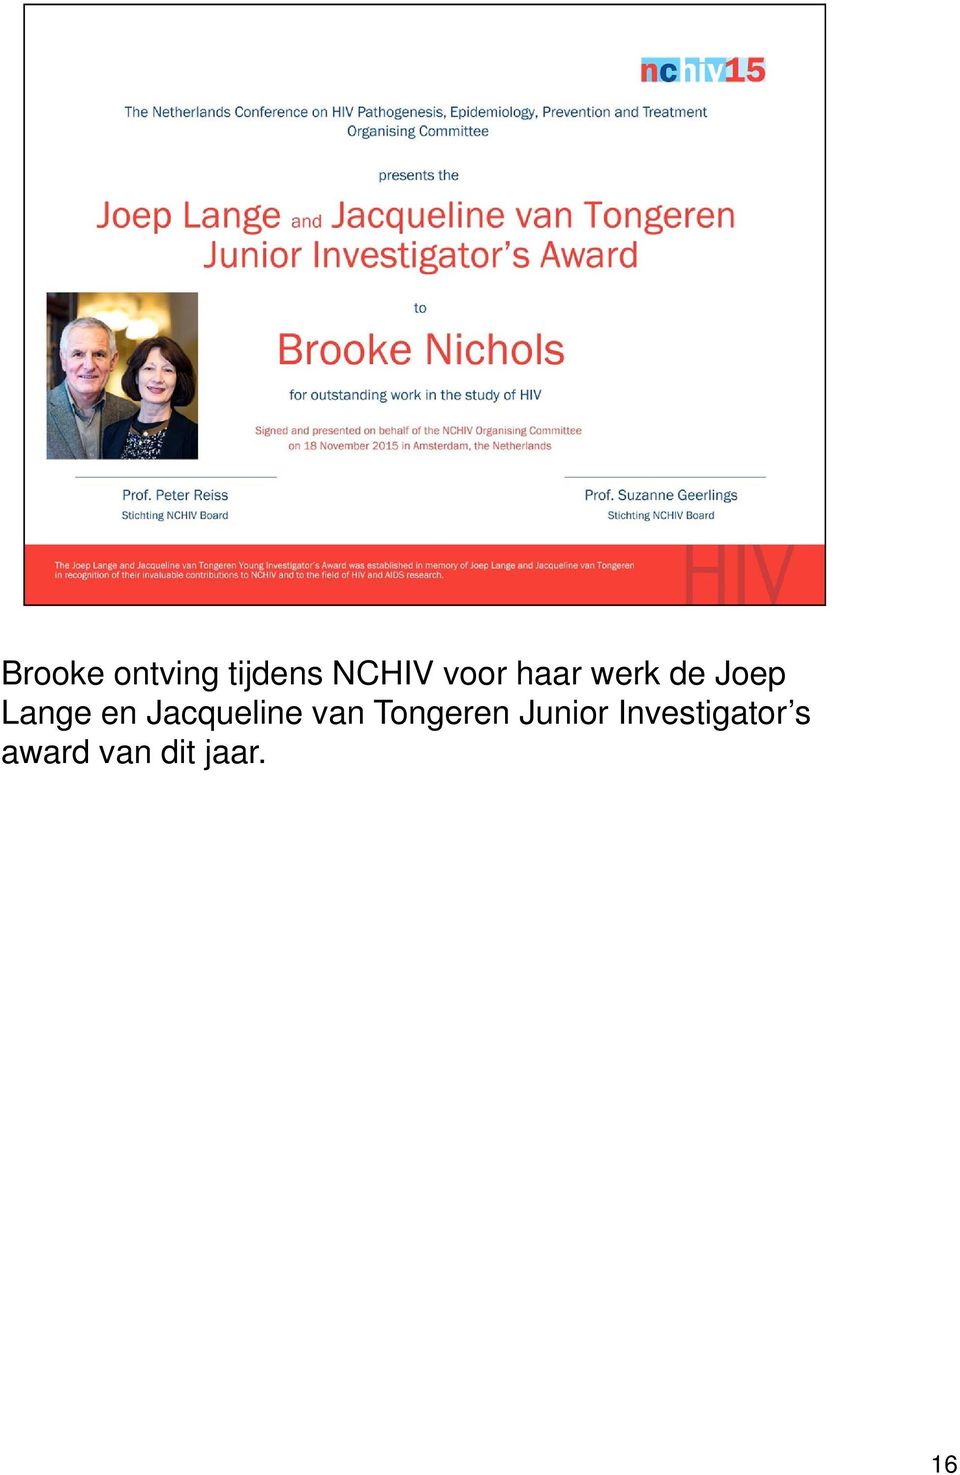 Jacqueline van Tongeren Junior